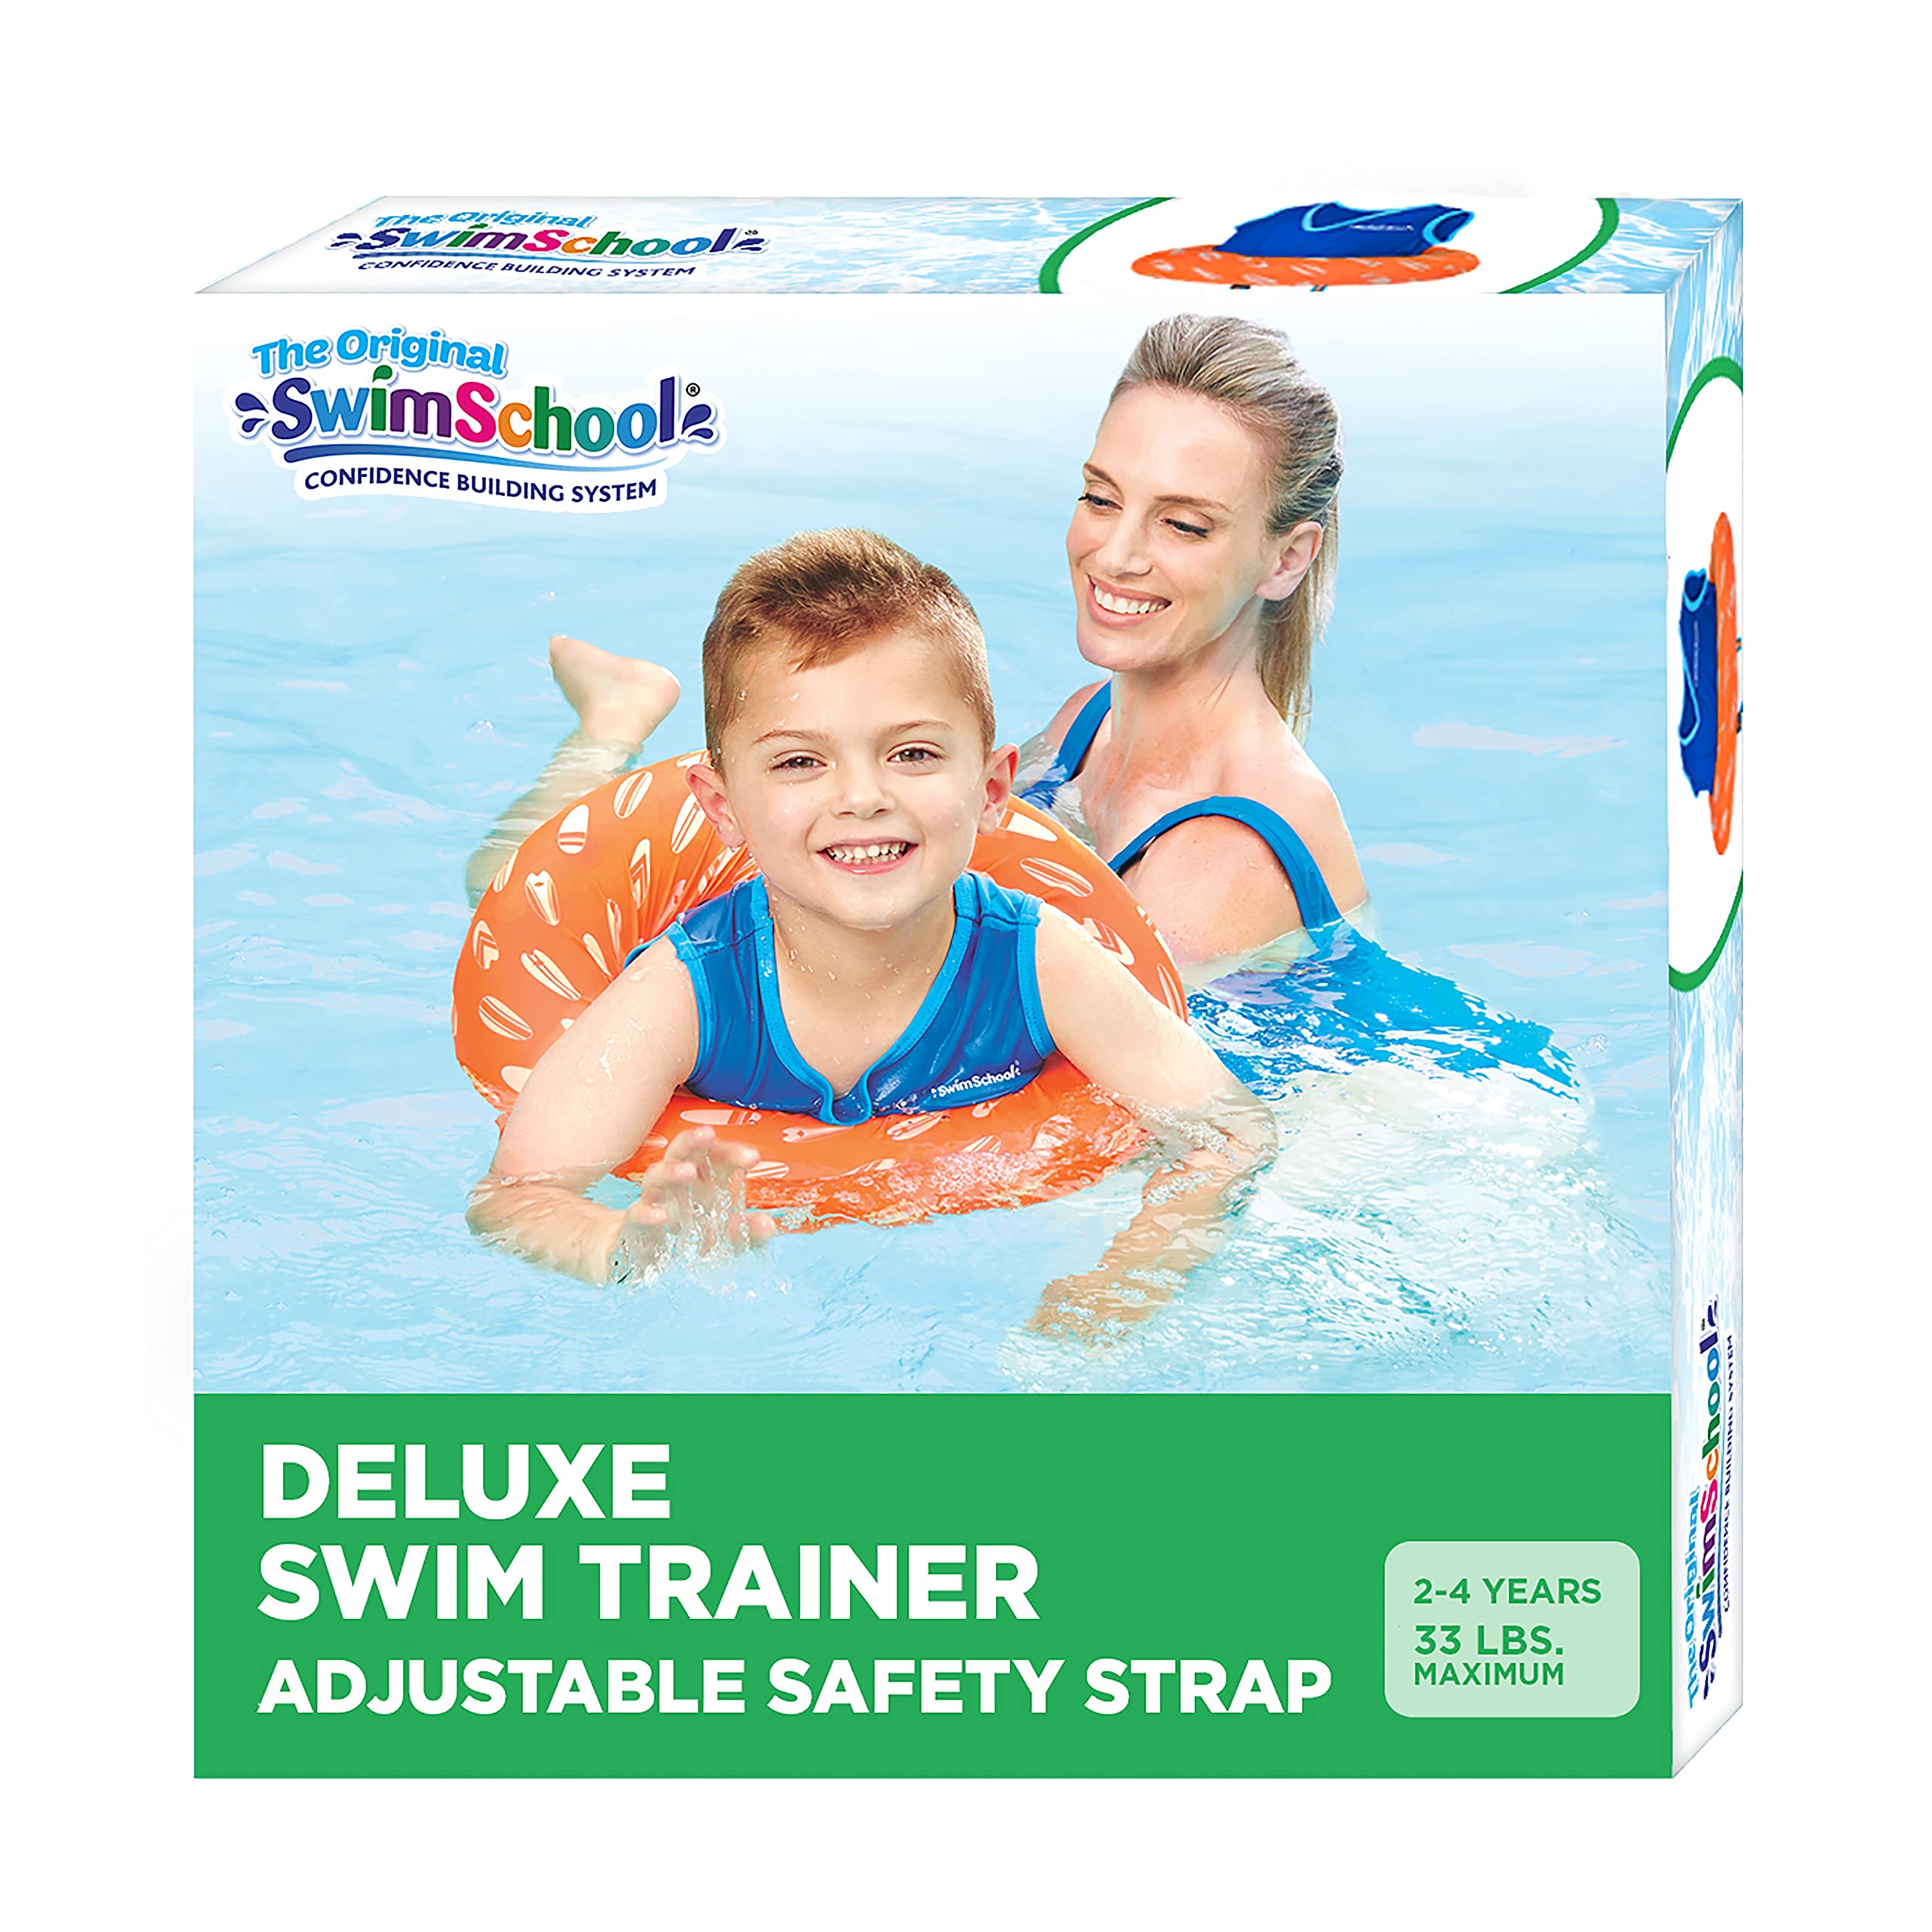 SwimSchool Deluxe Tot Trainer by Aqua Leisure